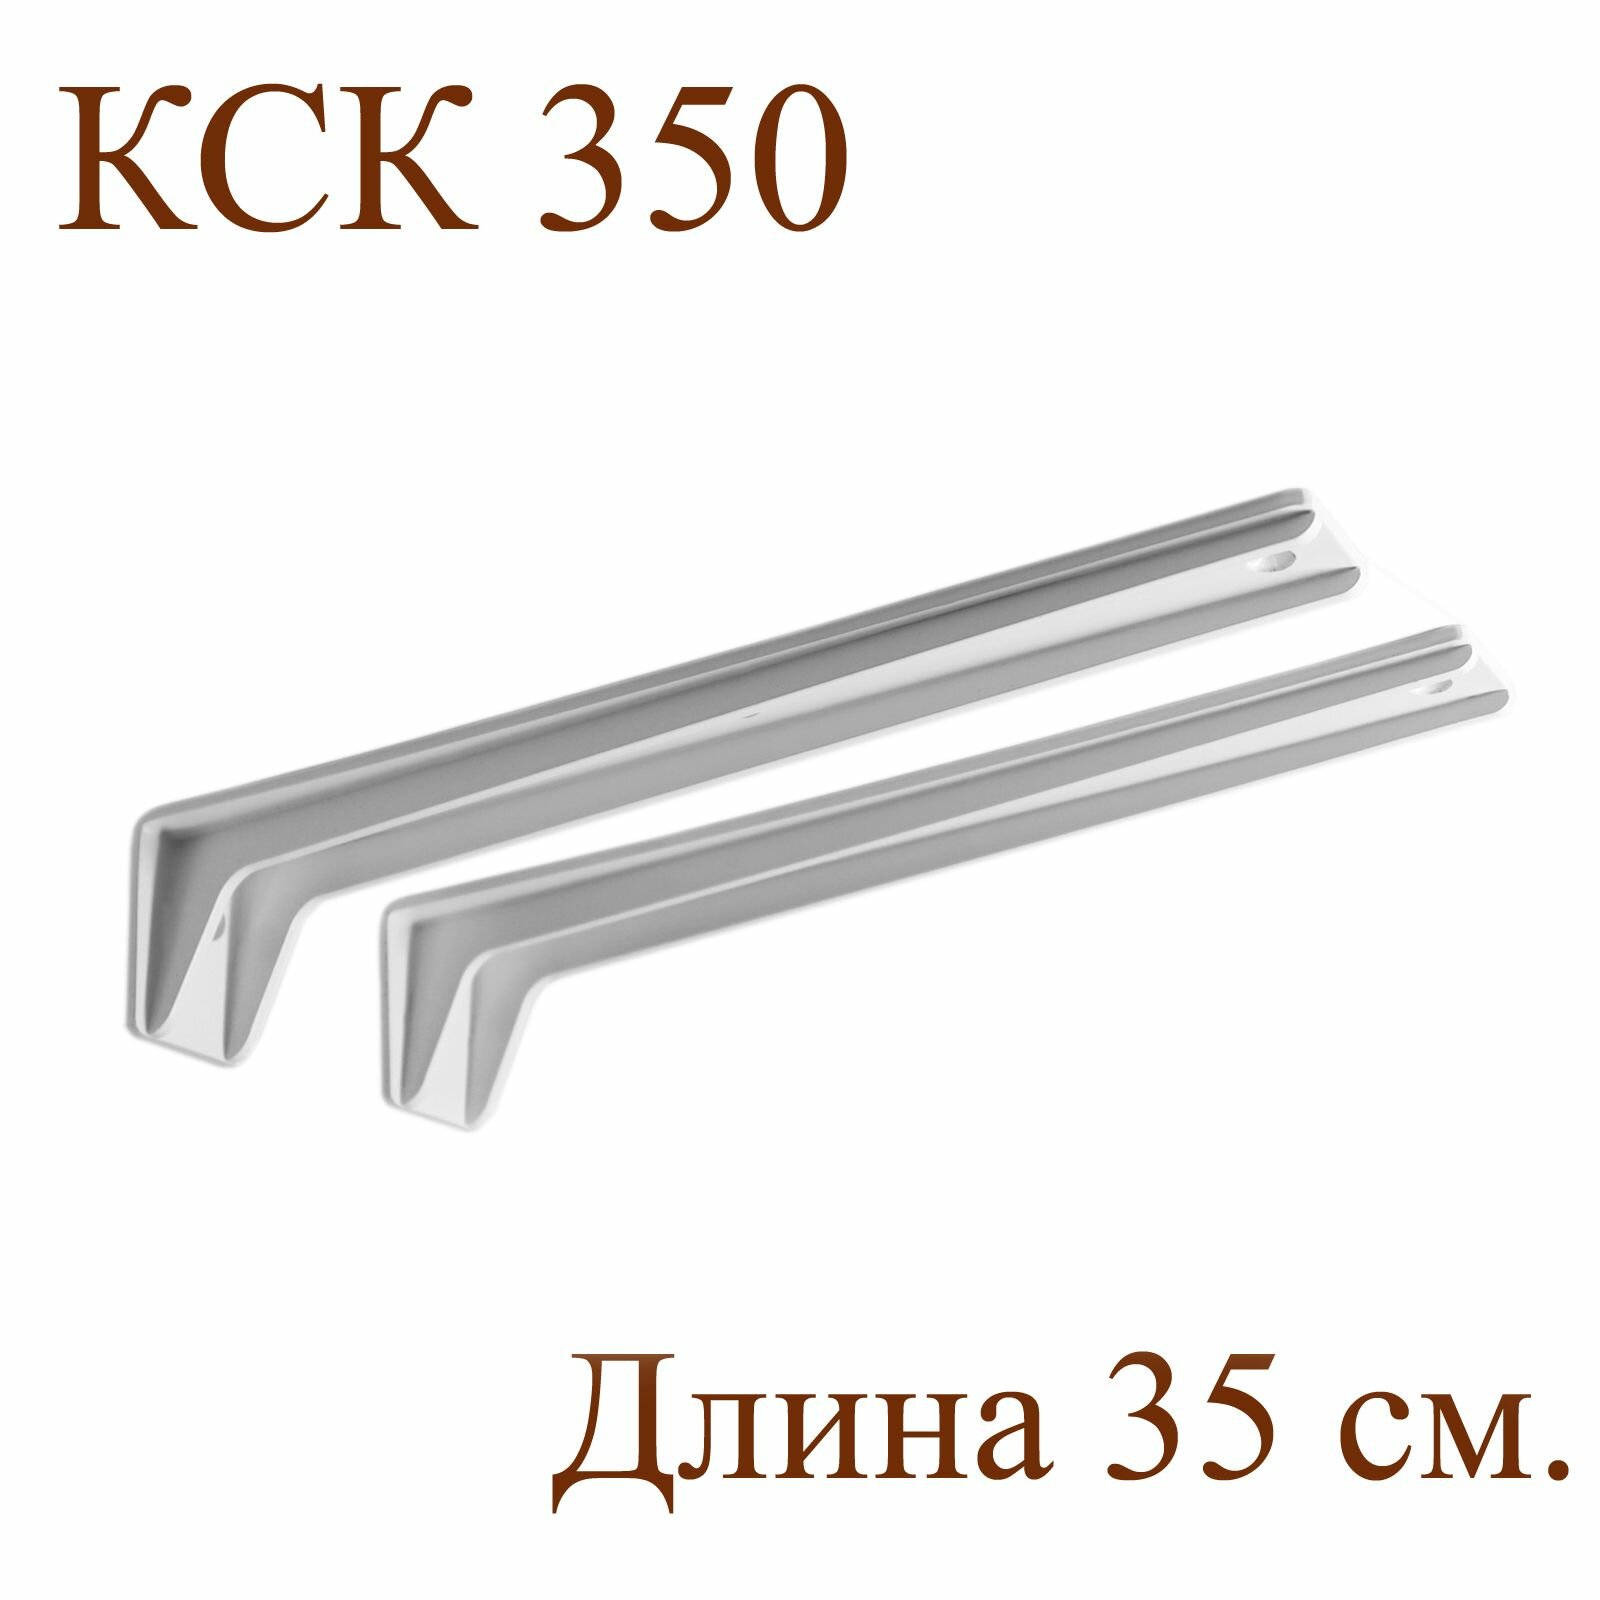 Комплект консольных кронштейнов КСК350 2 шт. 35х6х63 см. Белый